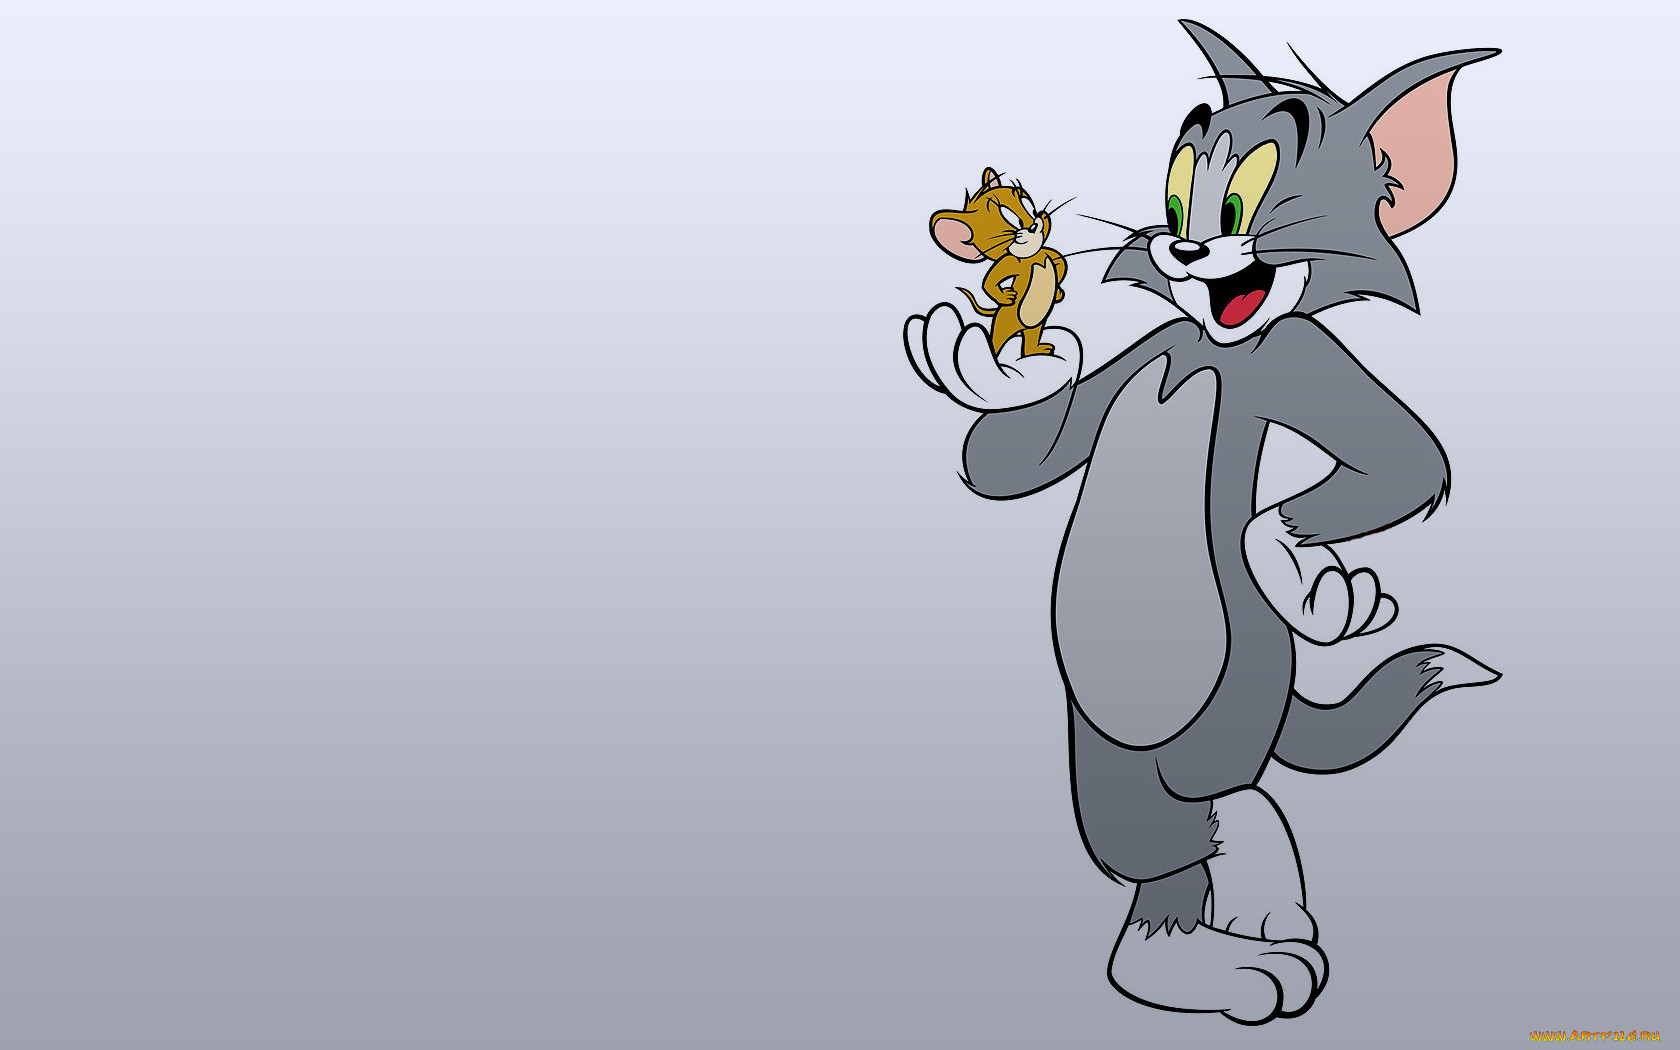 Обои Том и Джерри Мультфильмы Tom And Jerry, обои для рабочего стола,  фотографии том, джерри, мультфильмы, tom, and, jerry, и Обои для рабочего  стола, скачать обои картинки заставки на рабочий стол.